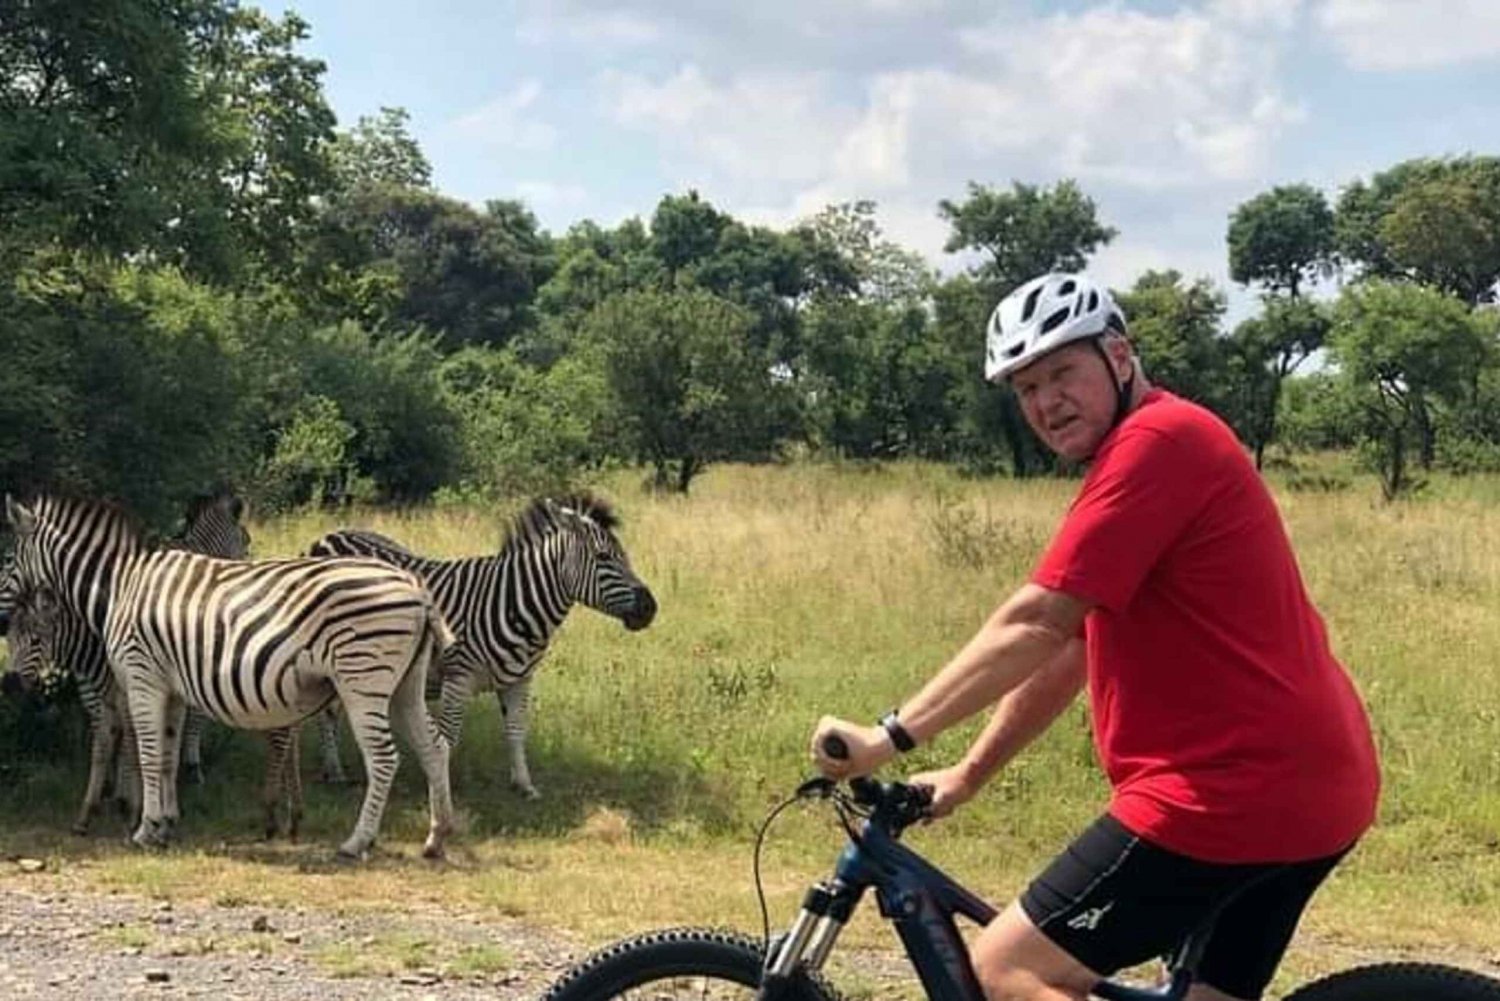 From Pretoria: E-Bike in the wild with game near Jo'burg